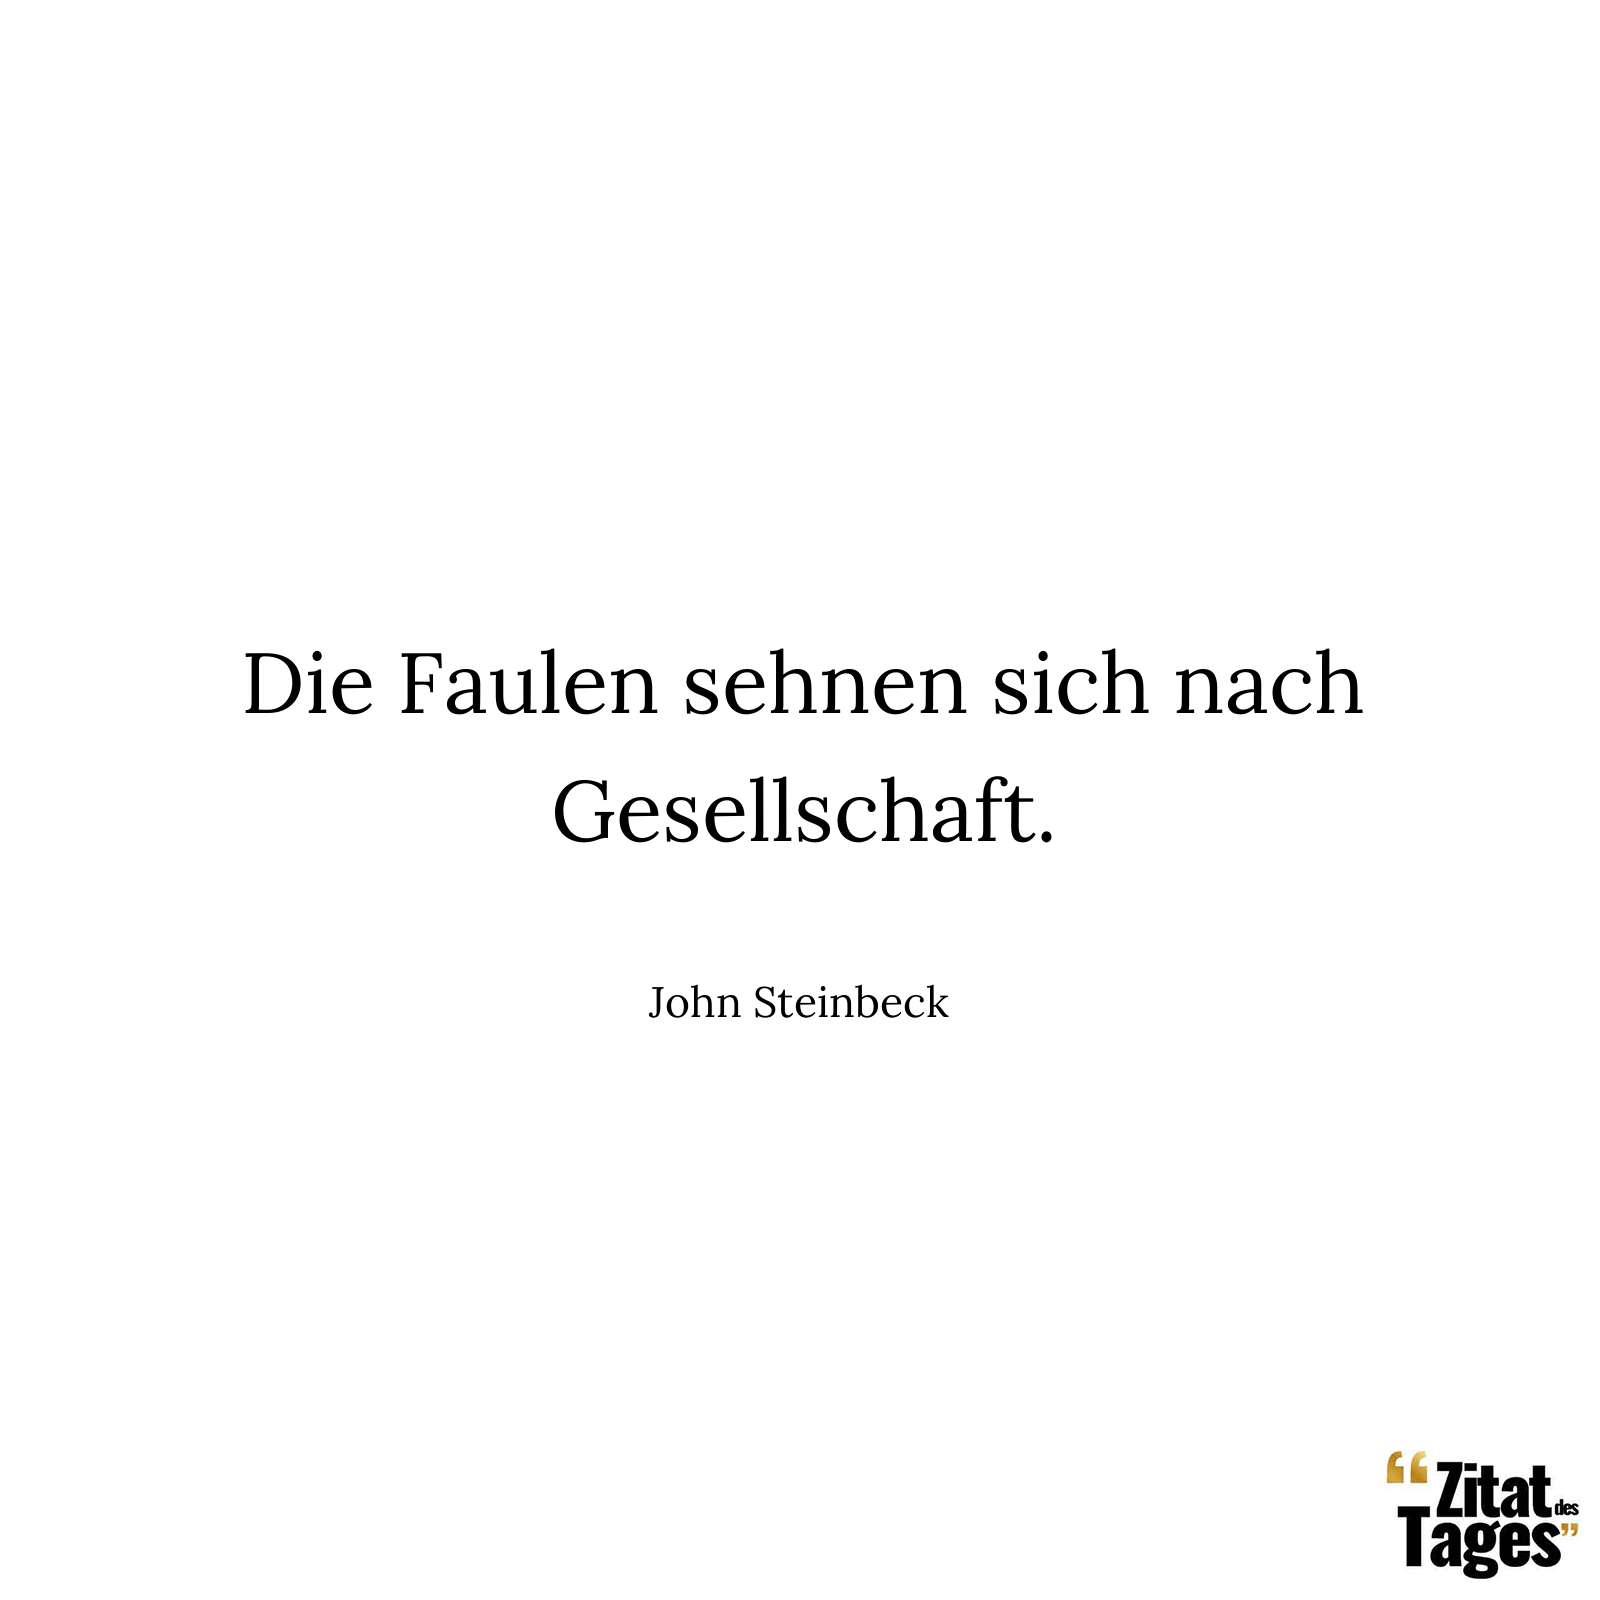 Die Faulen sehnen sich nach Gesellschaft. - John Steinbeck